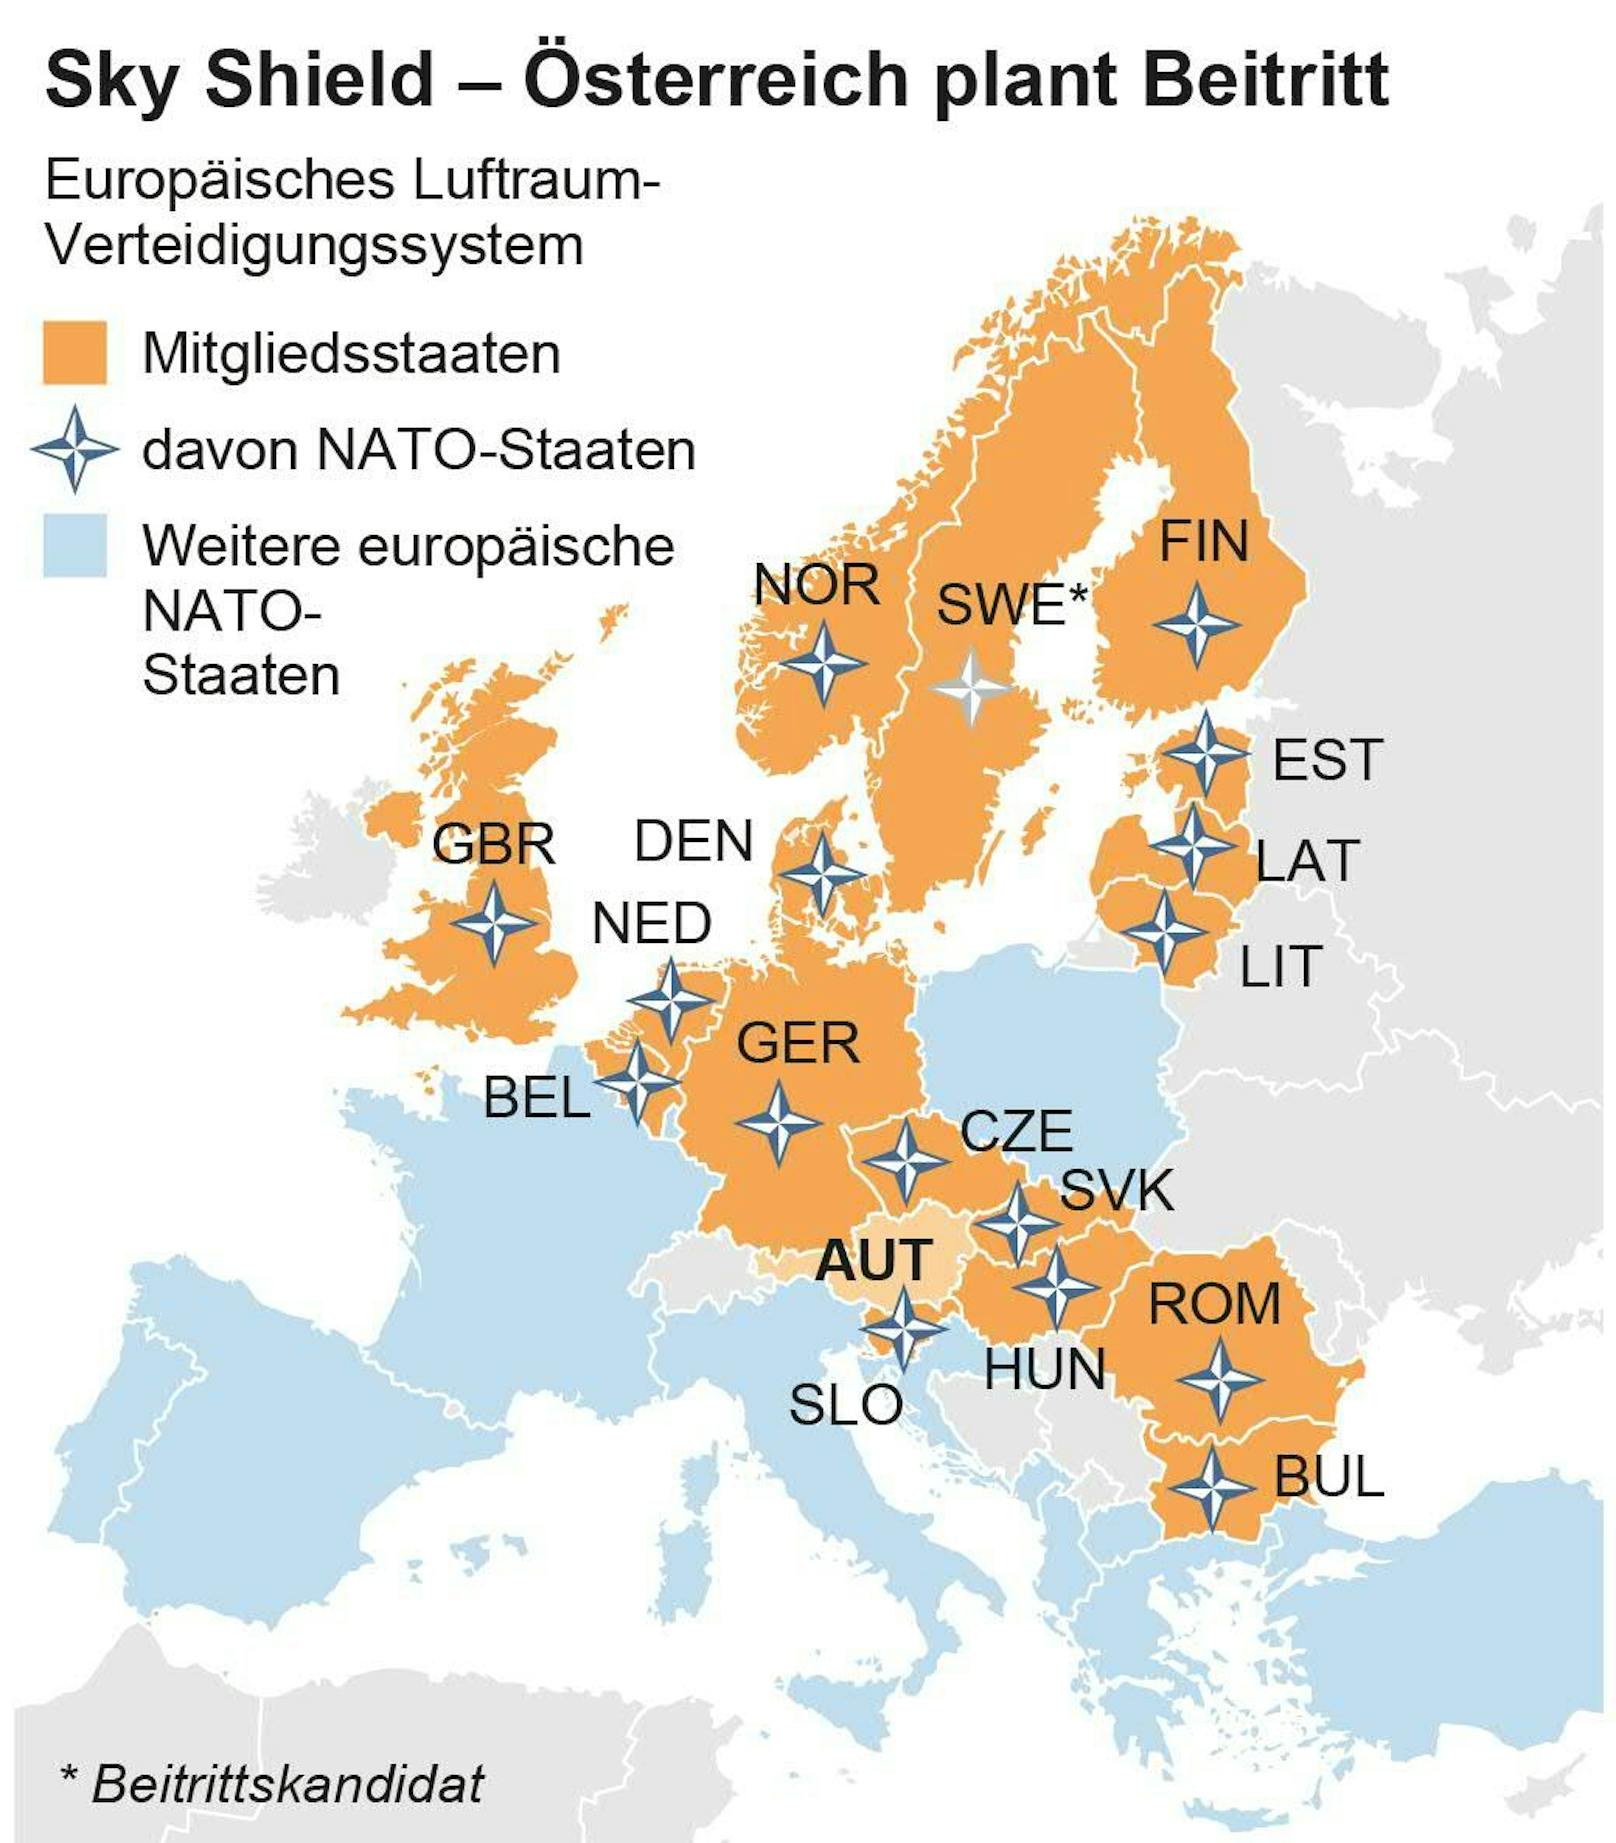 Europakarte mit Mitgliedsstaaten von Sky Shield sowie NATO-Länder.